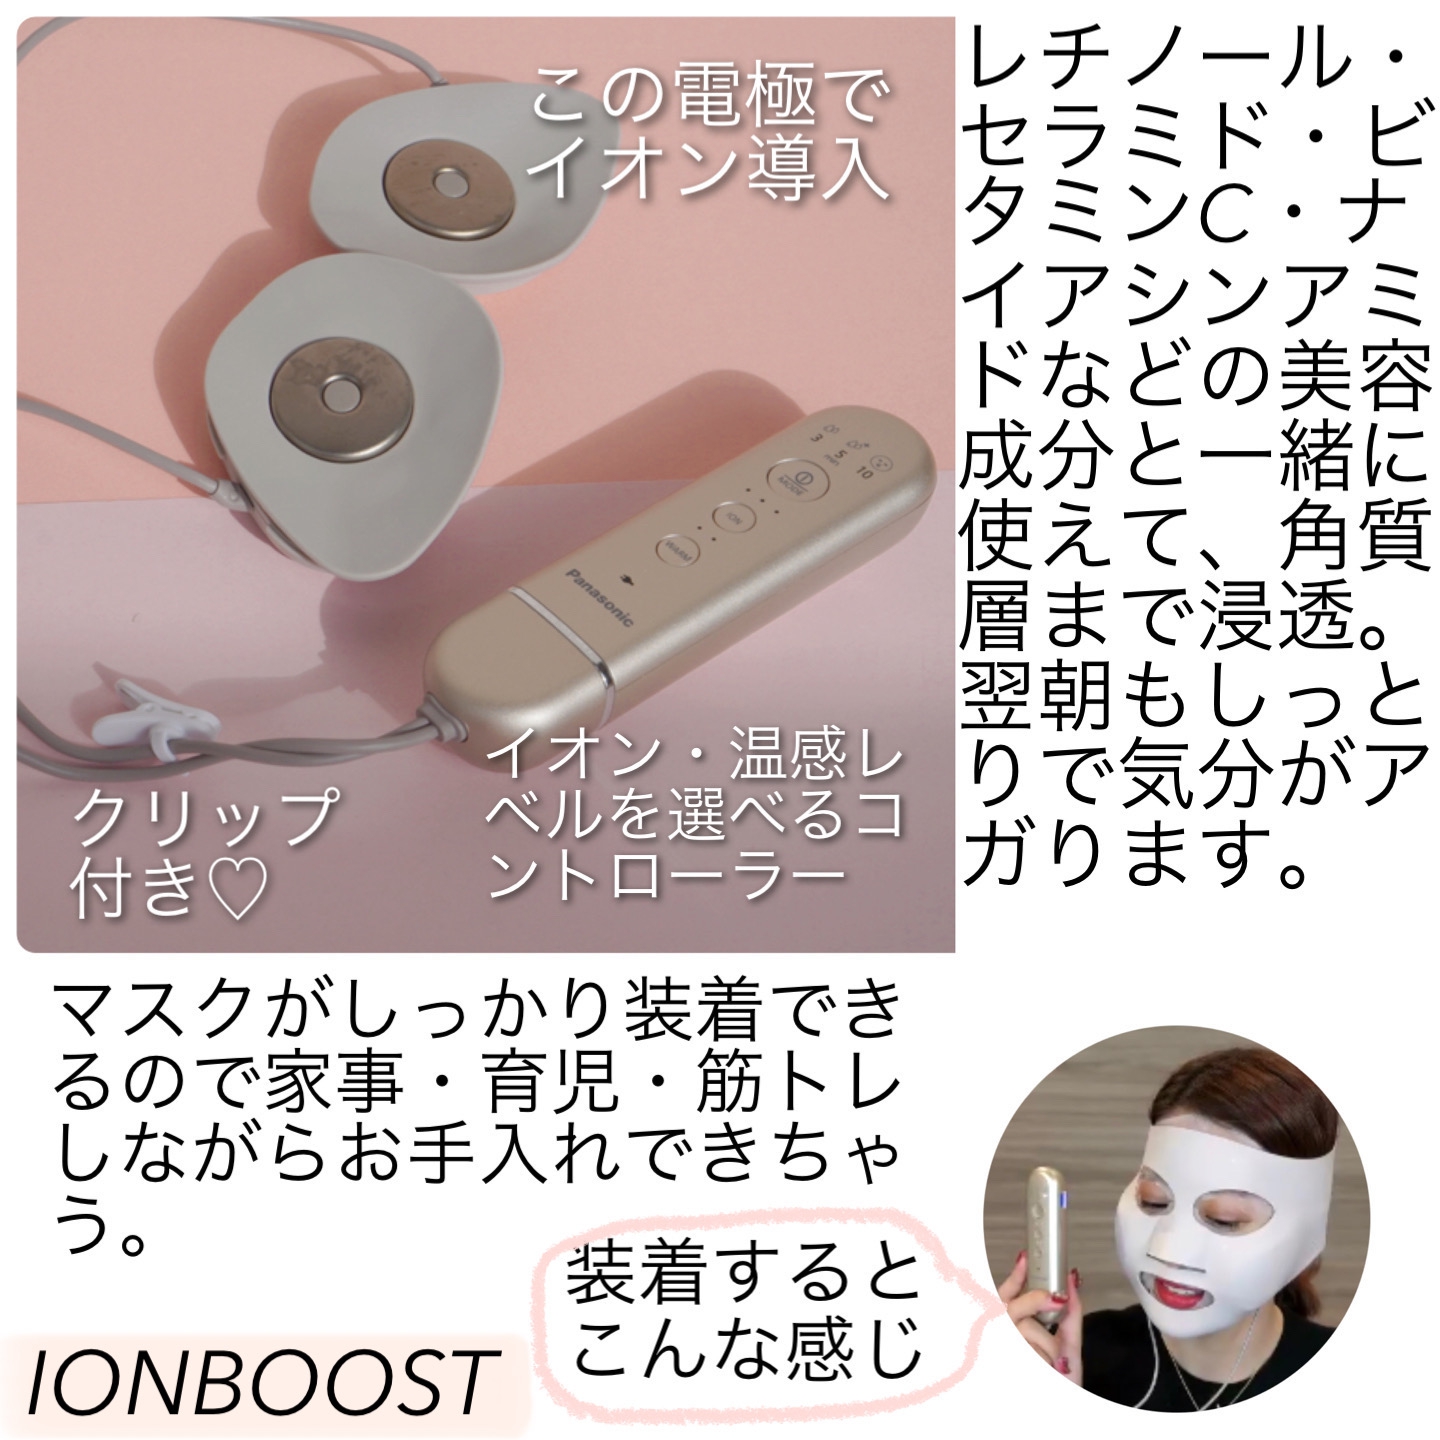 Panasonic(パナソニック) マスク型イオン美顔器 イオンブースト EH-SM50の良い点・メリットに関するなゆさんの口コミ画像1